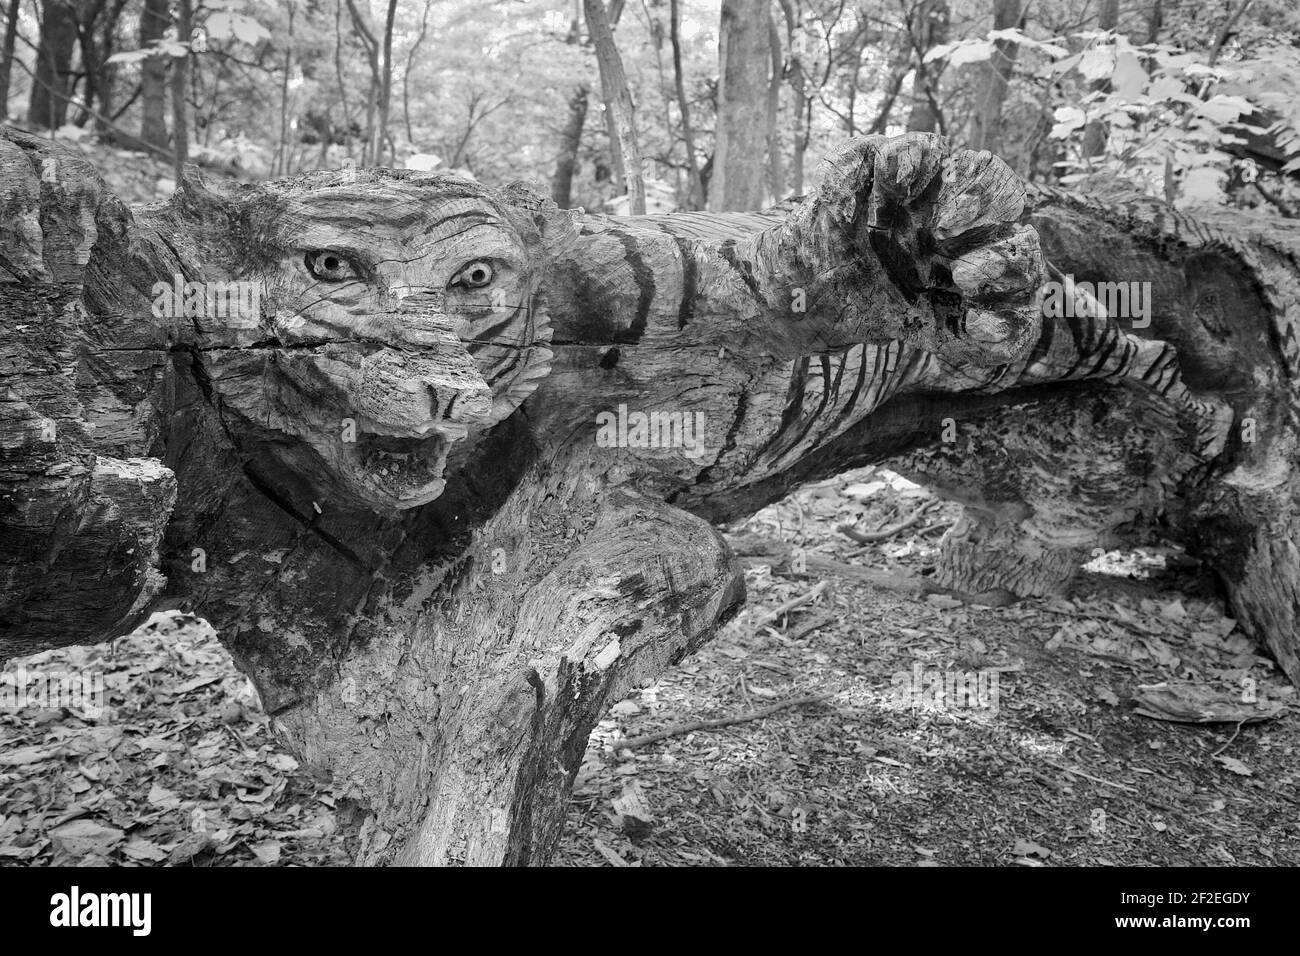 Una tigre intagliata in un tronco d'albero nei boschi. Foto Stock